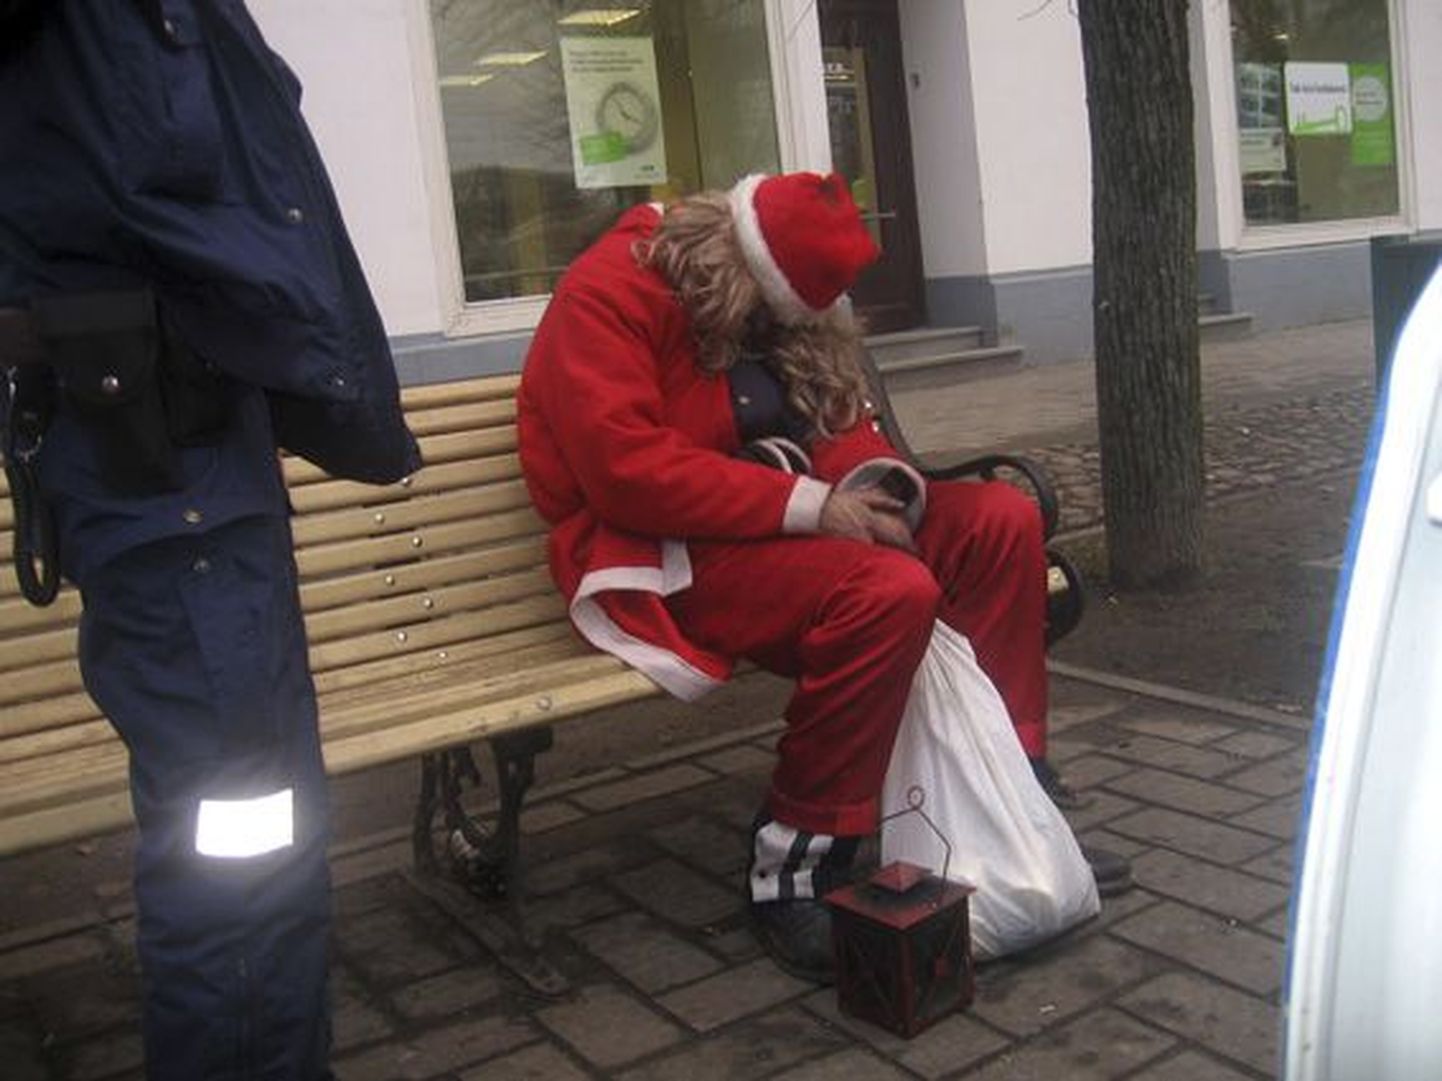 Viimati nähti Rakvere kesklinnas sama jõulumeest 2006. aastal, kui ta tukkus pingil.